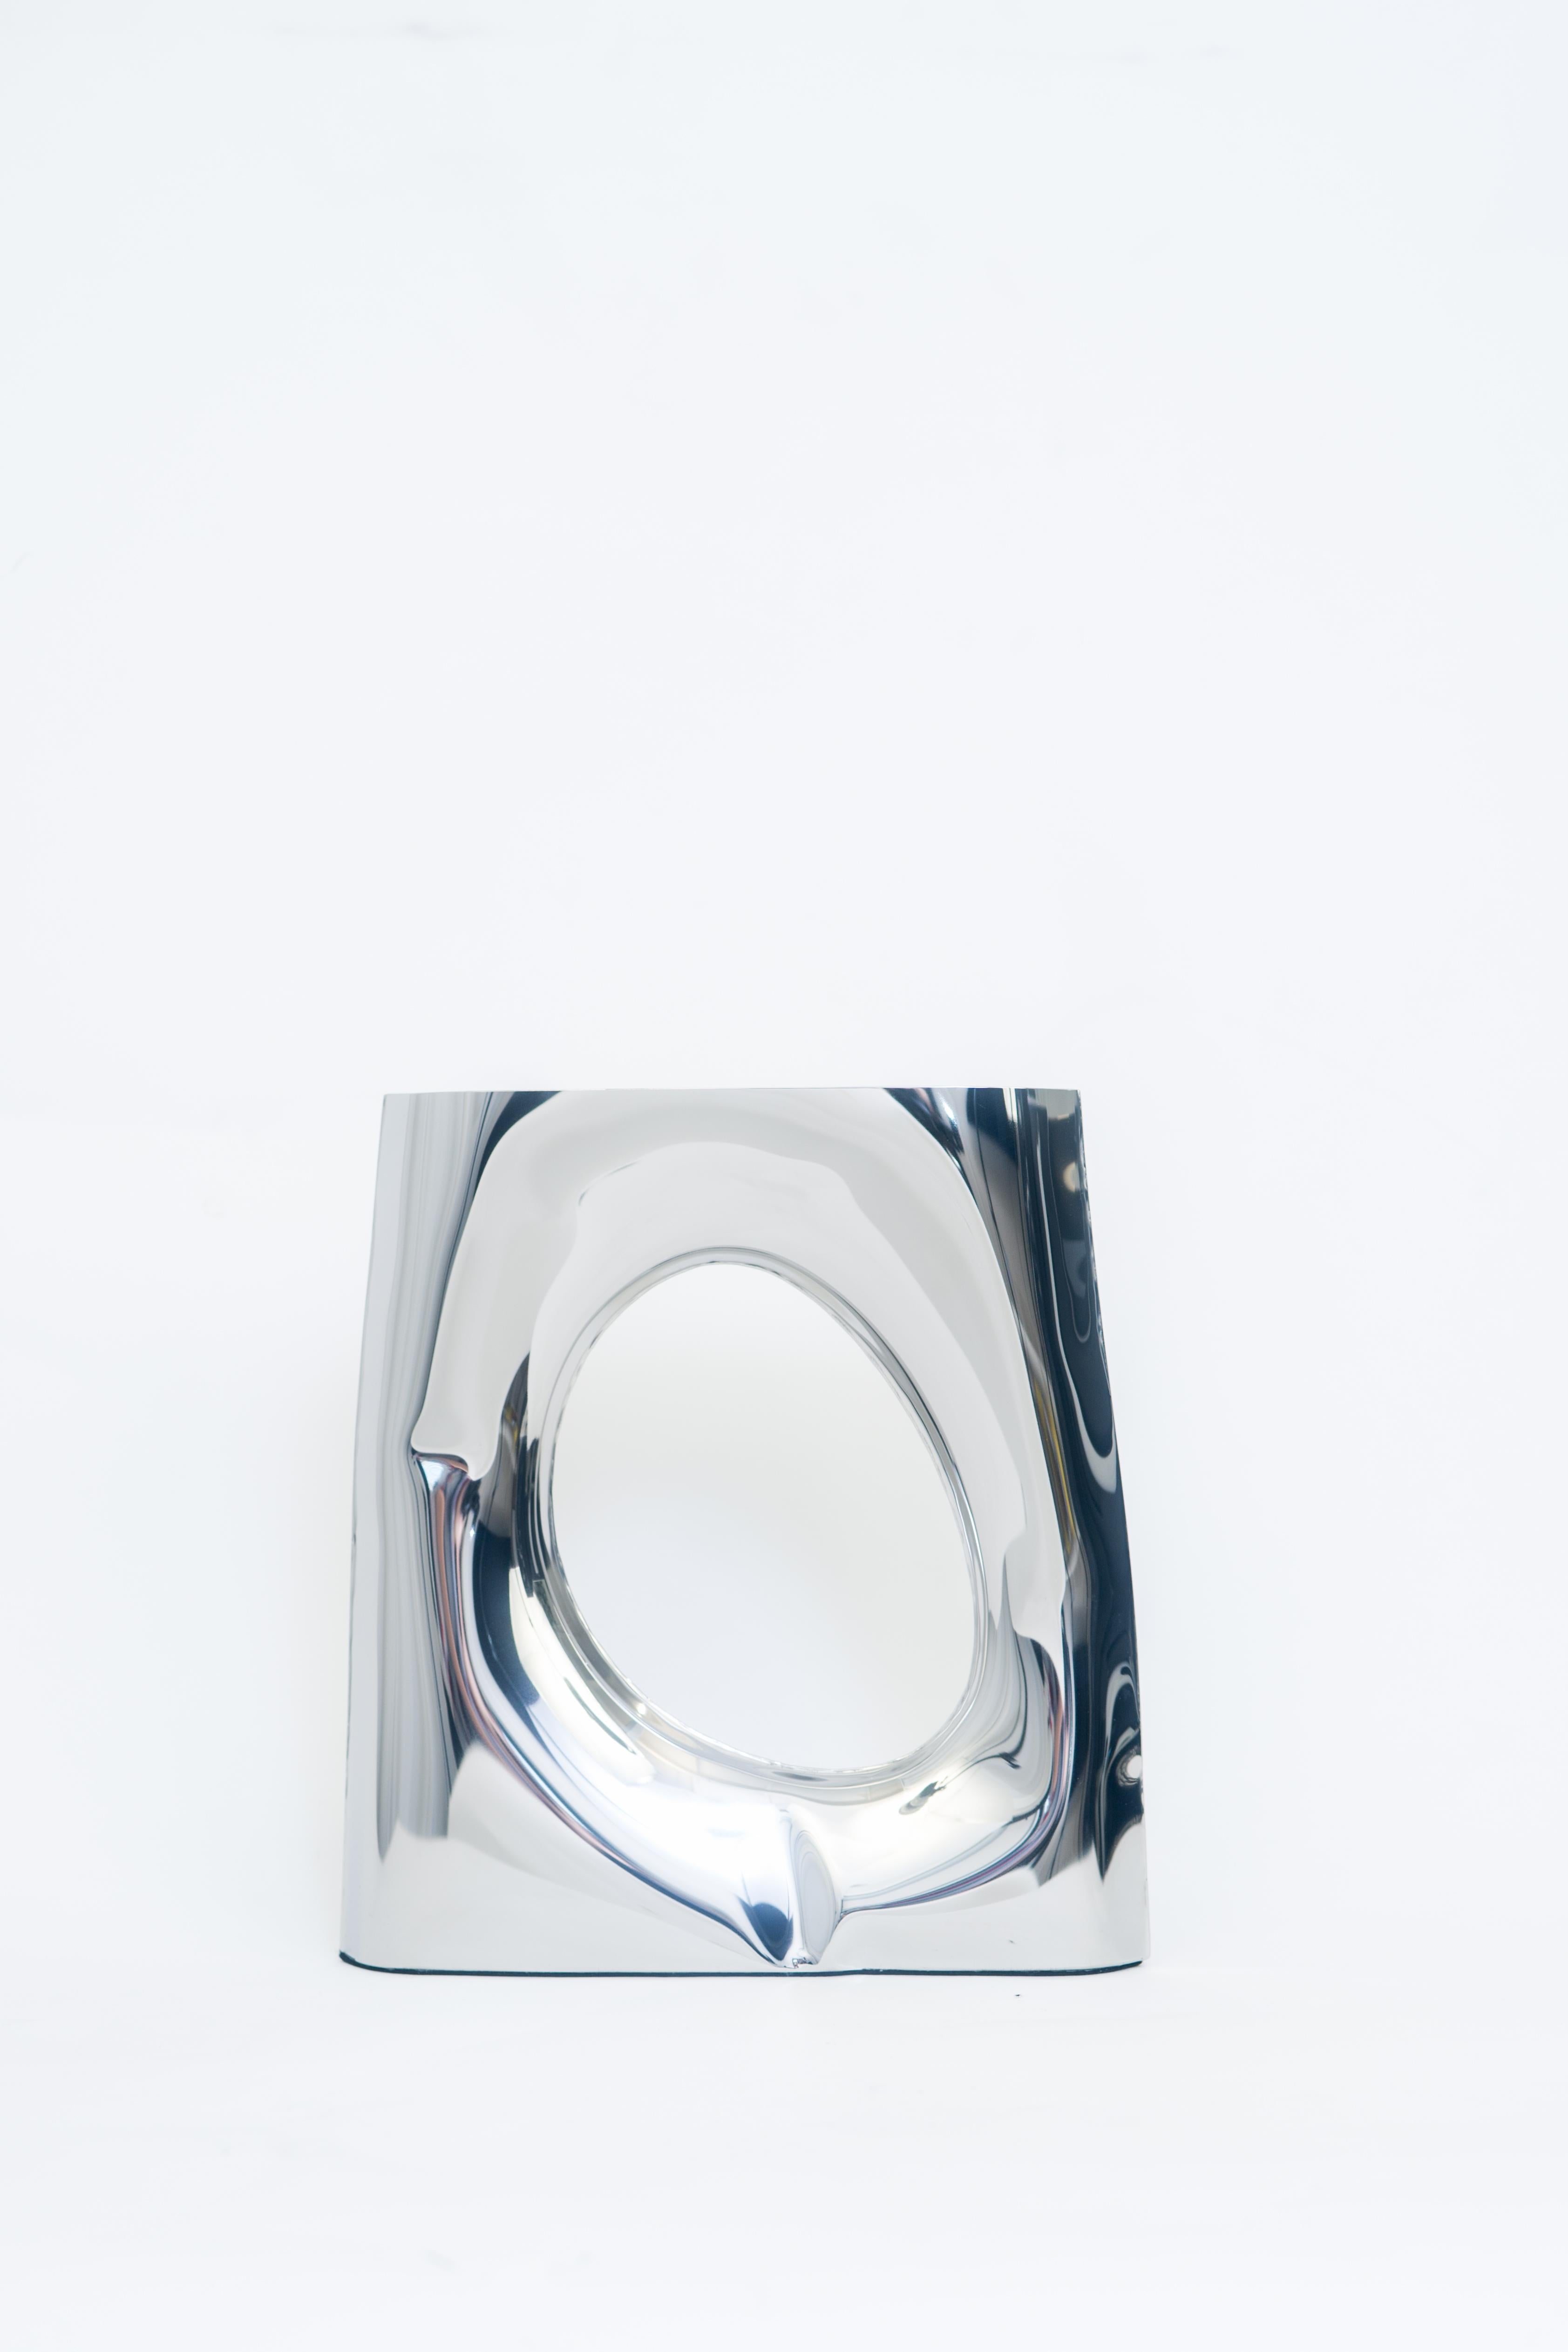 Vase Karava de Zieta
Dimensions : H 30 x L 30 x P 6 cm.
MATERIAL : acier inoxydable poli.

Forme d'expression trapézoïdale Les vases Karava introduisent une narration géométrique inspirante dans les intérieurs, modifiant les normes d'exposition